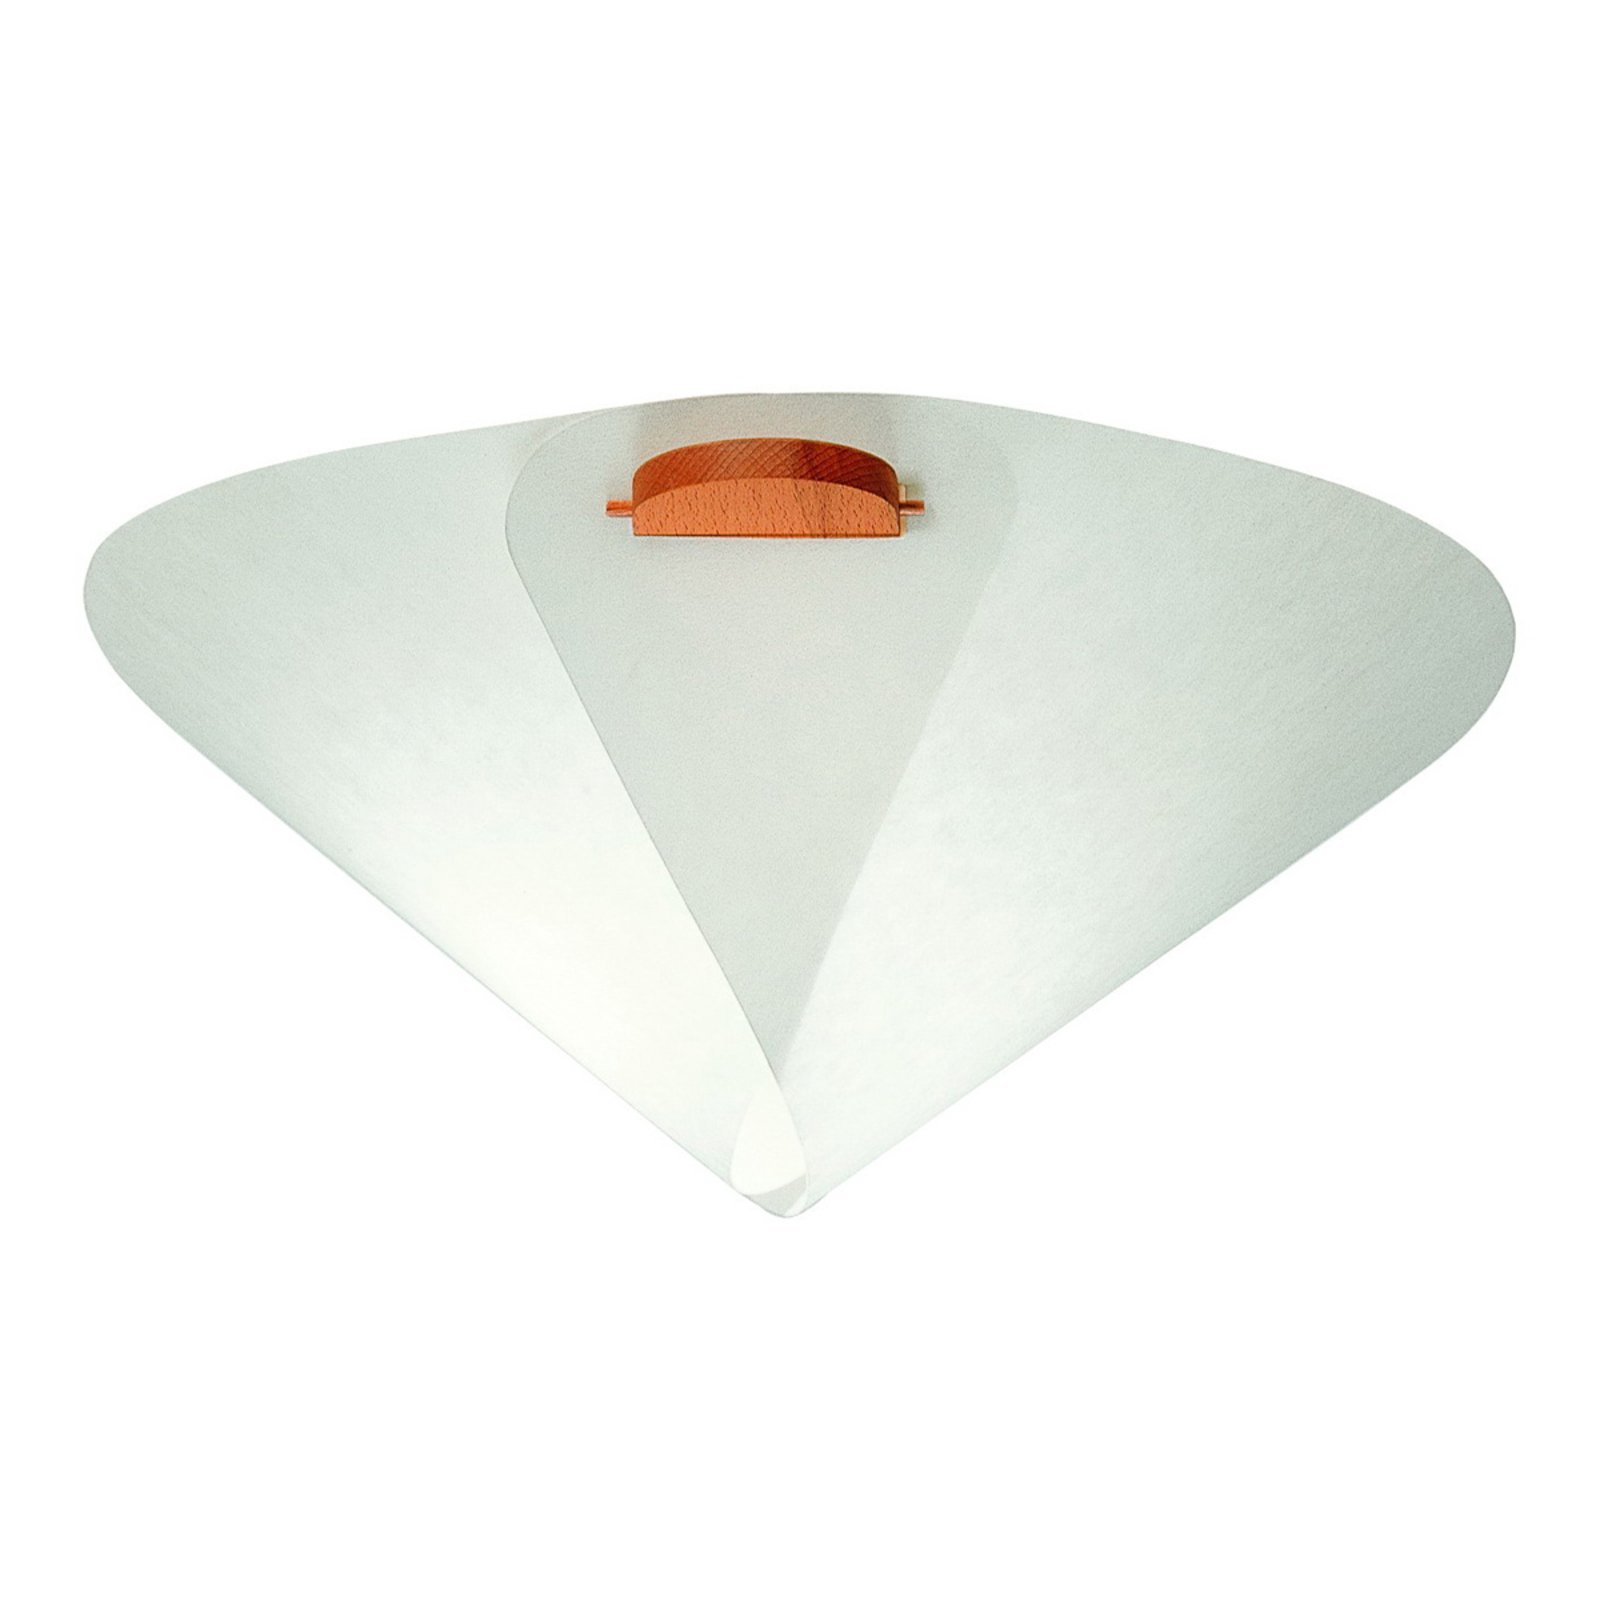 Dizajnerska stropna svjetiljka IRIS u obliku stošca